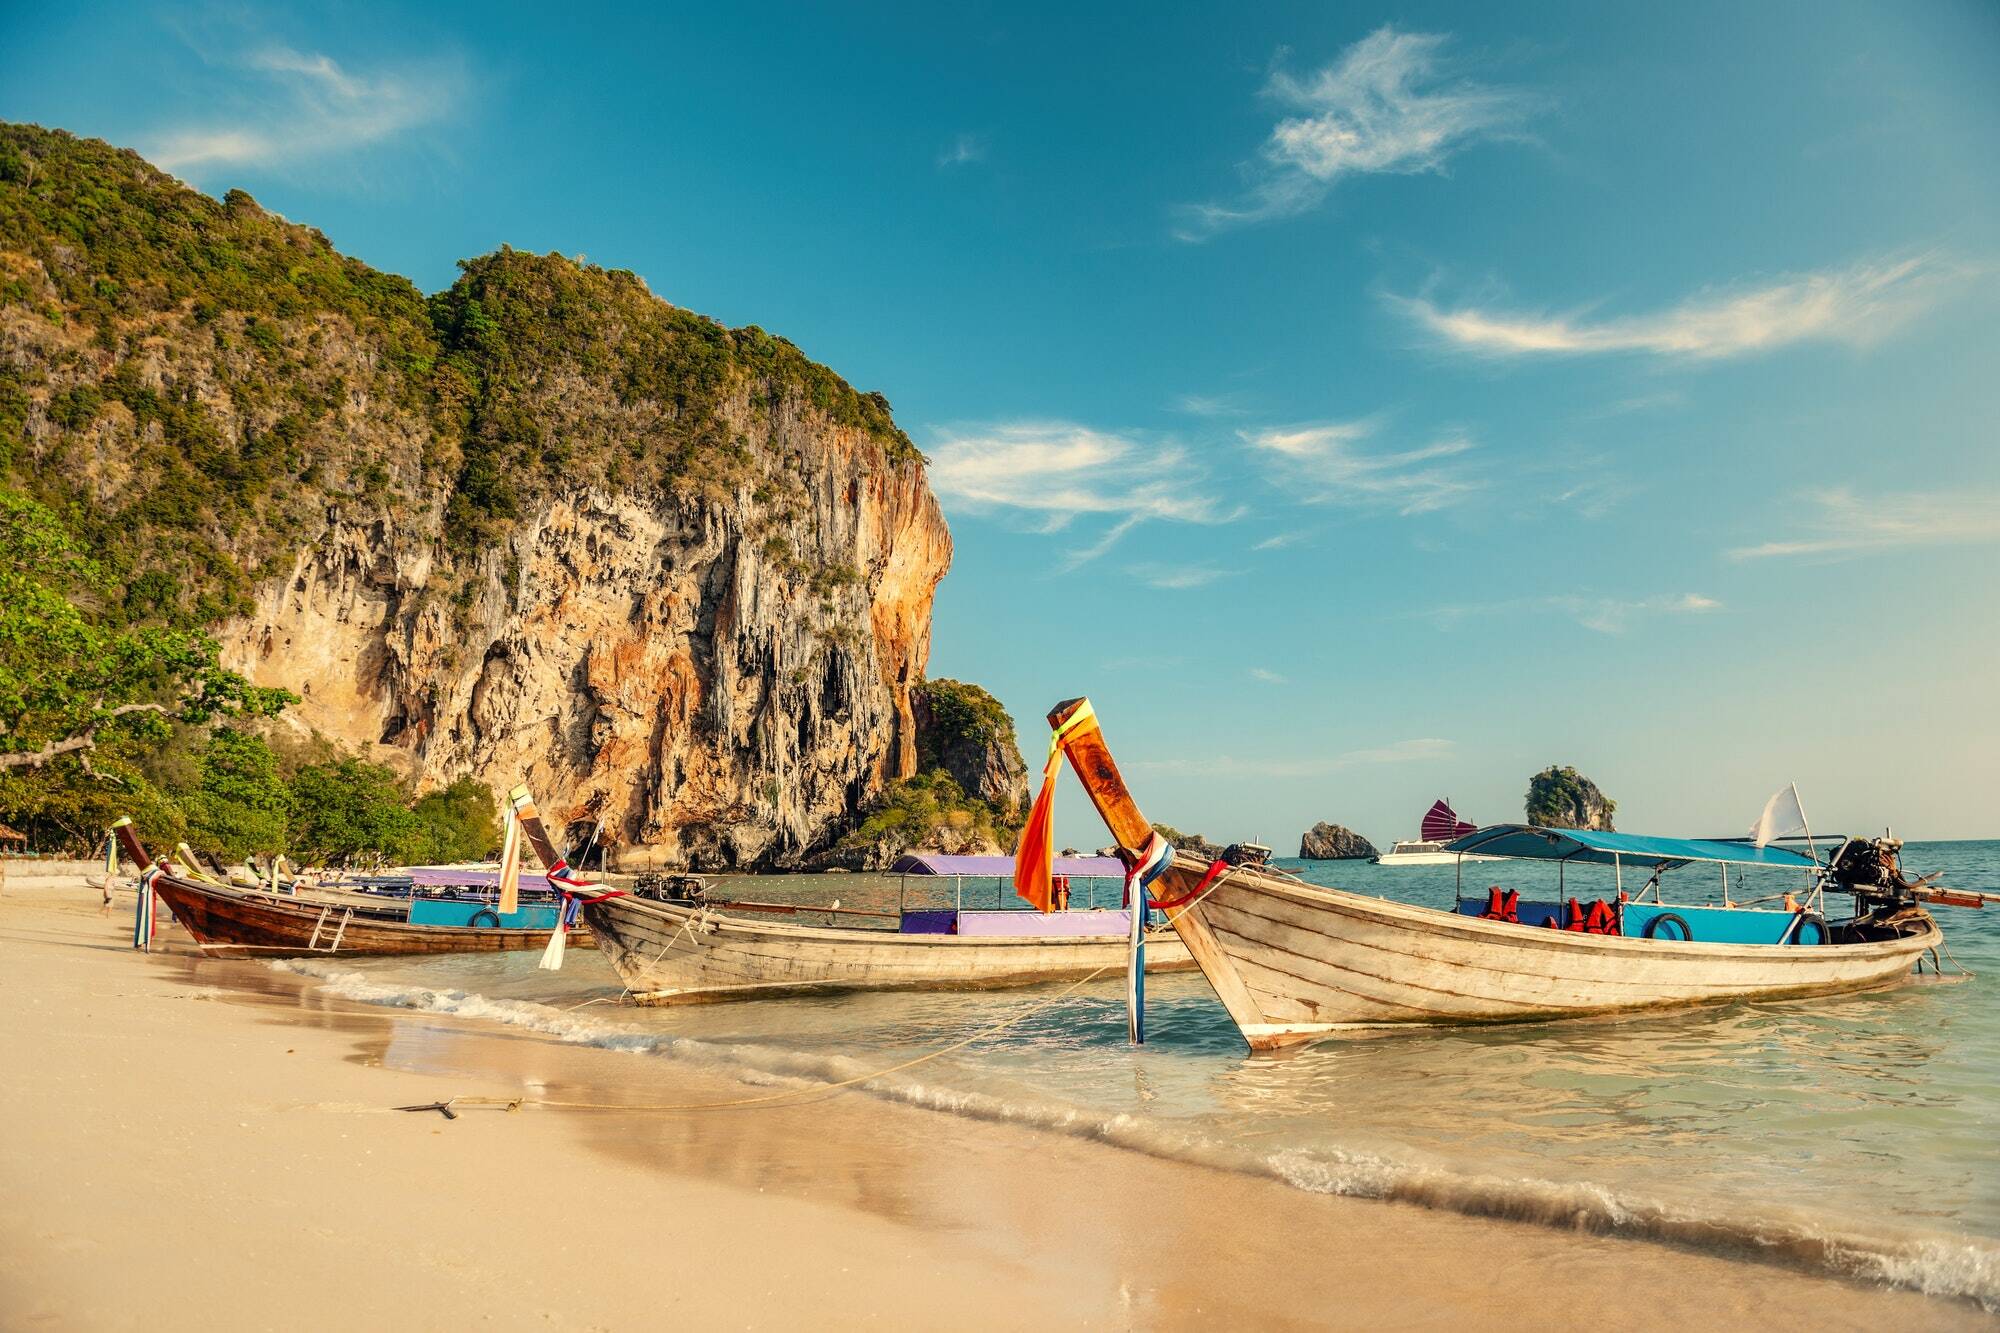 A beautiful beach in Thailand